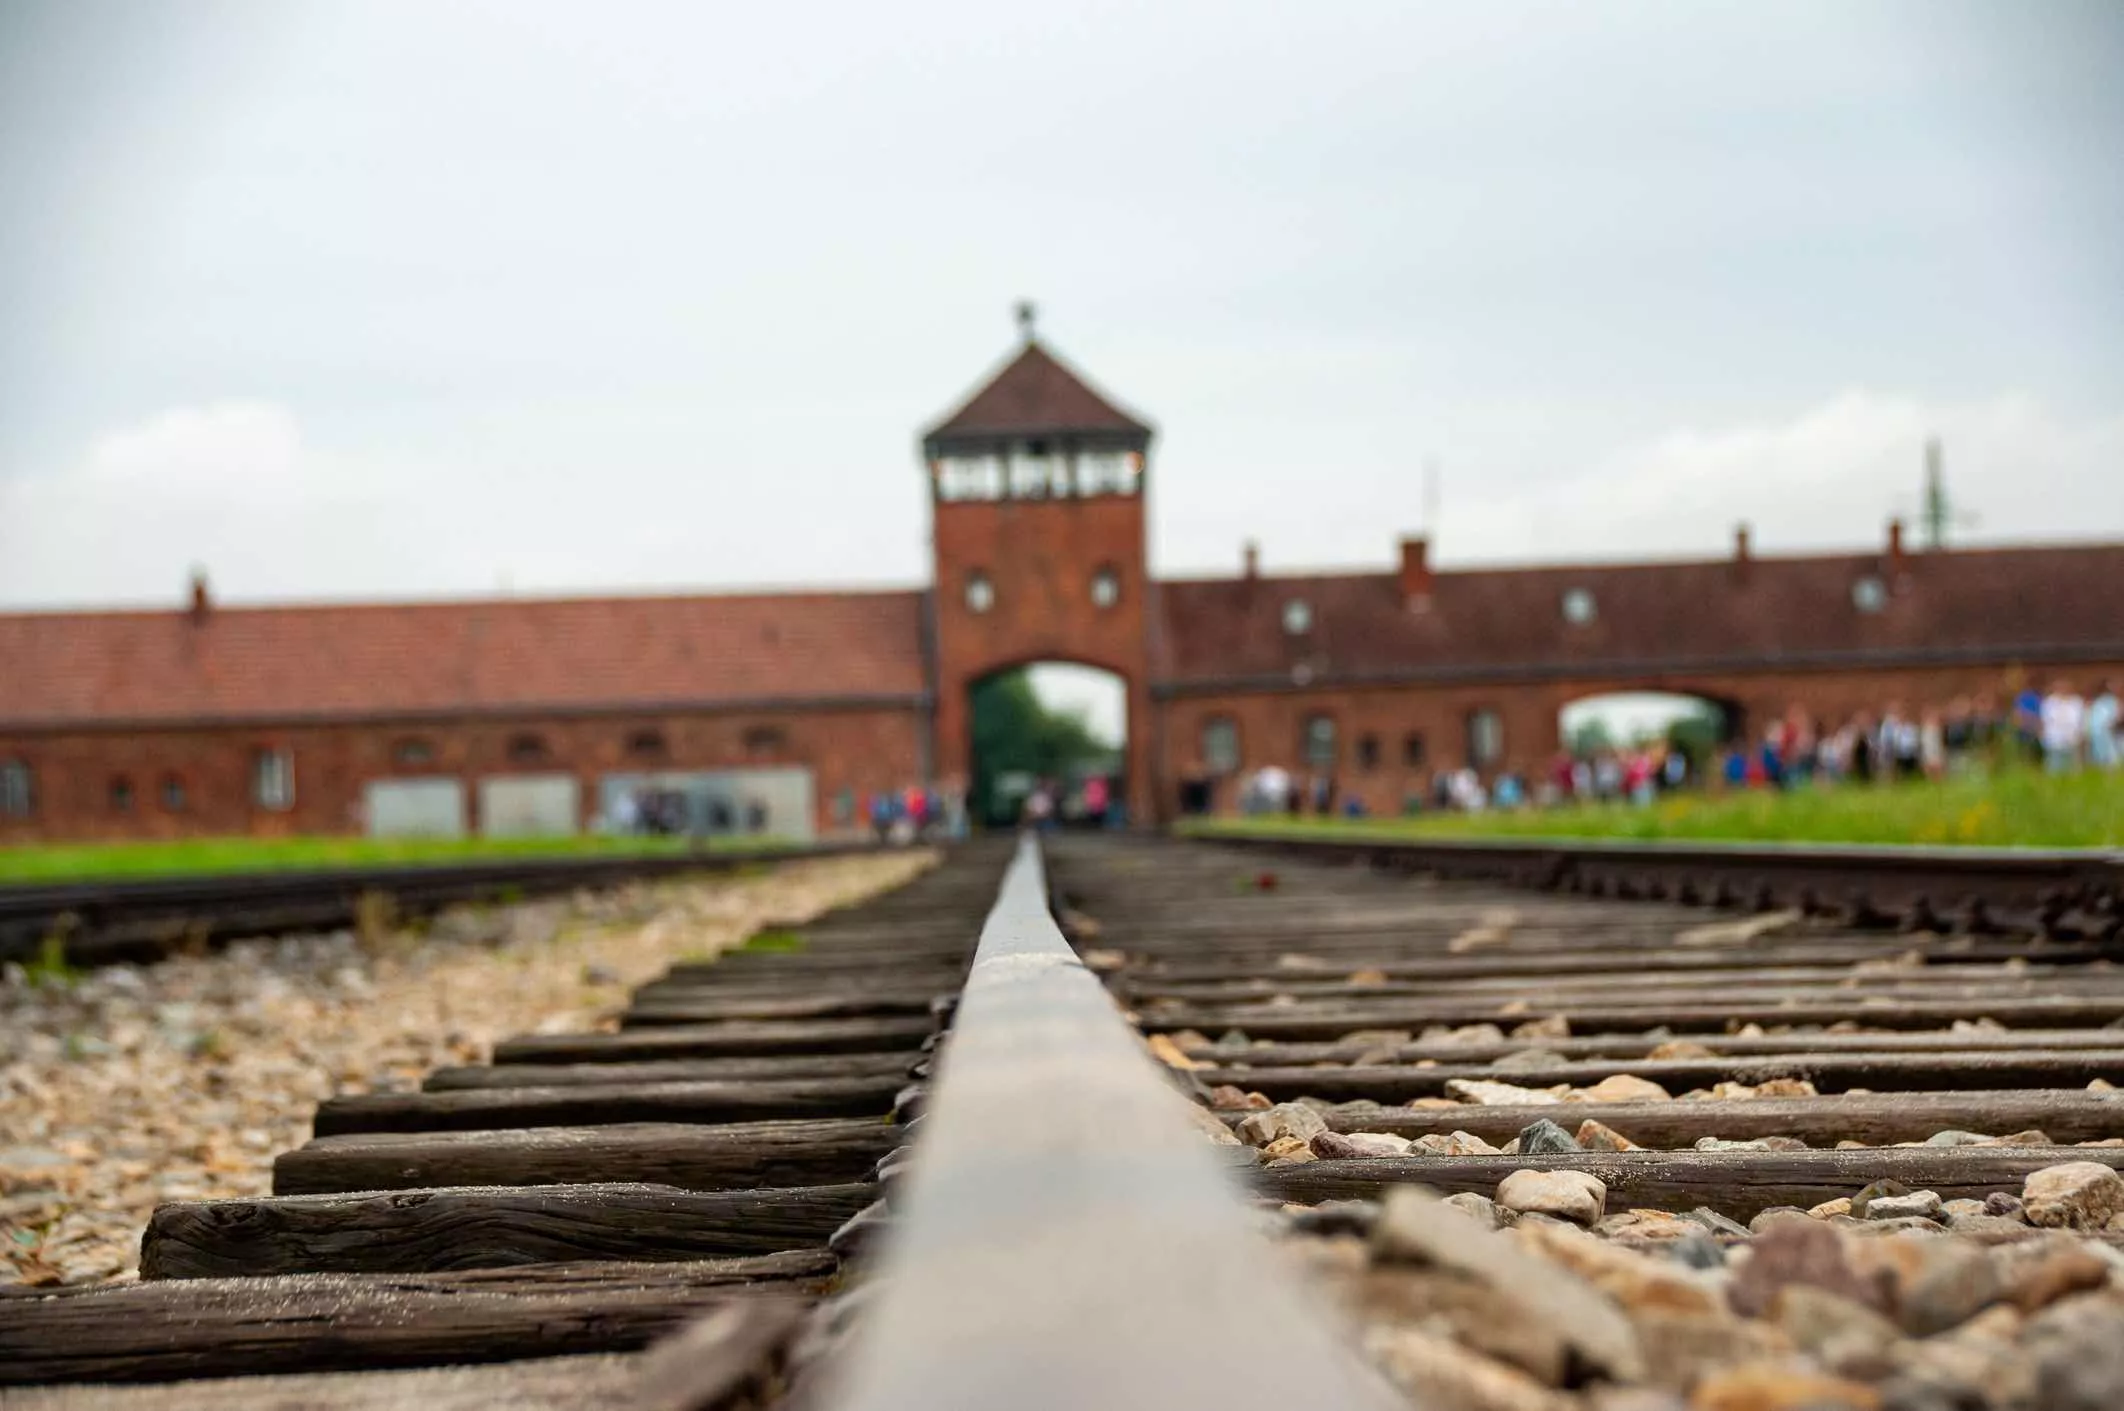 Camp de concentració d’Auschwitz